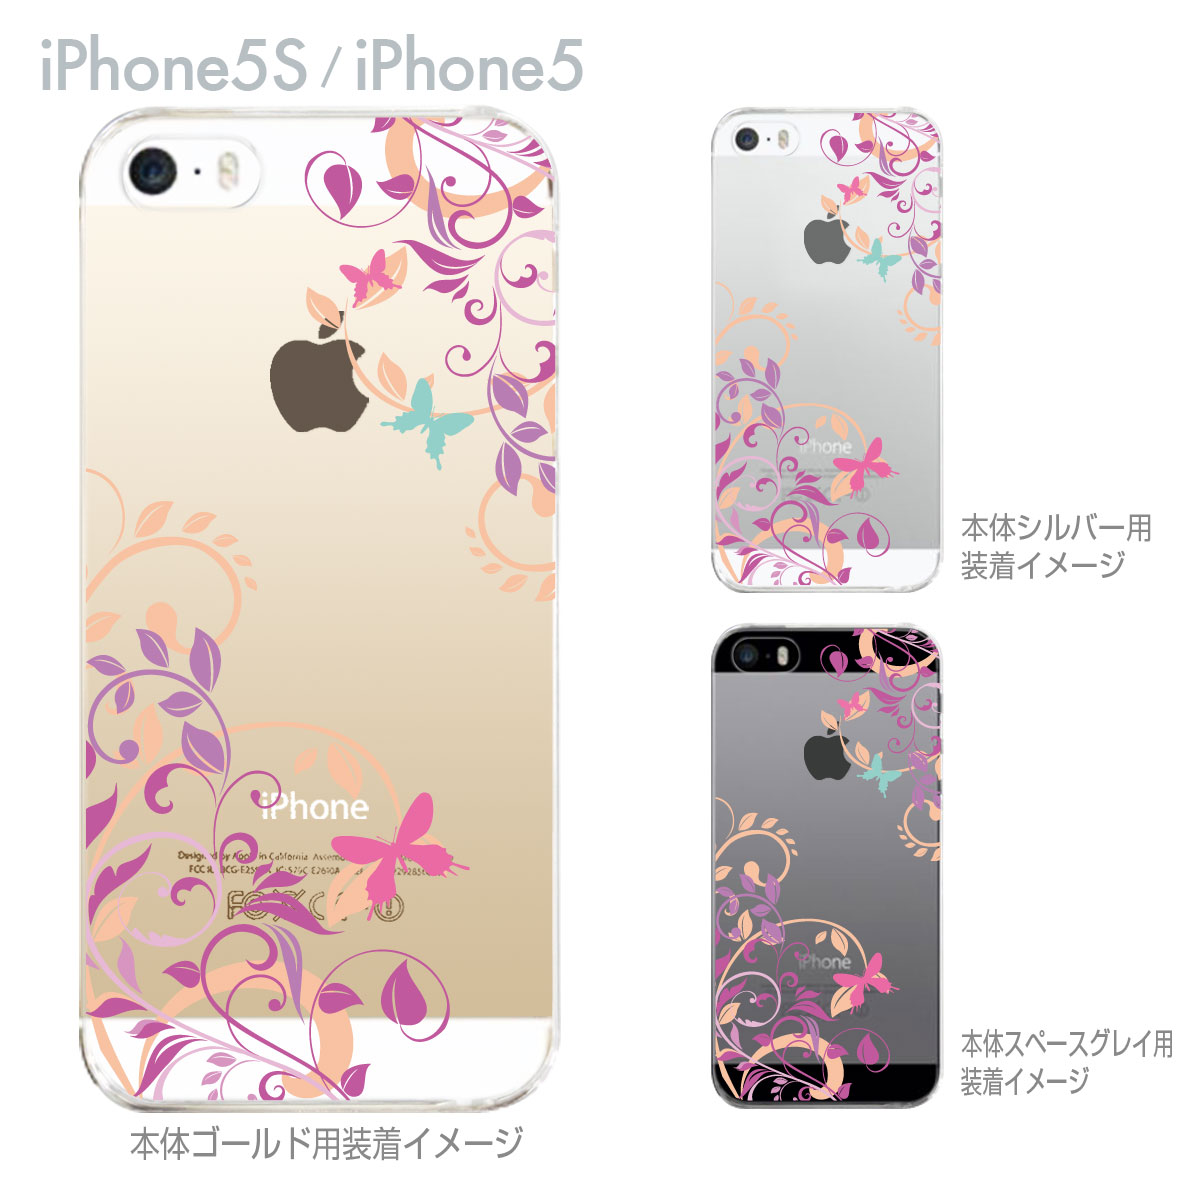 【iPhone5S】【iPhone5】【iPho...の商品画像